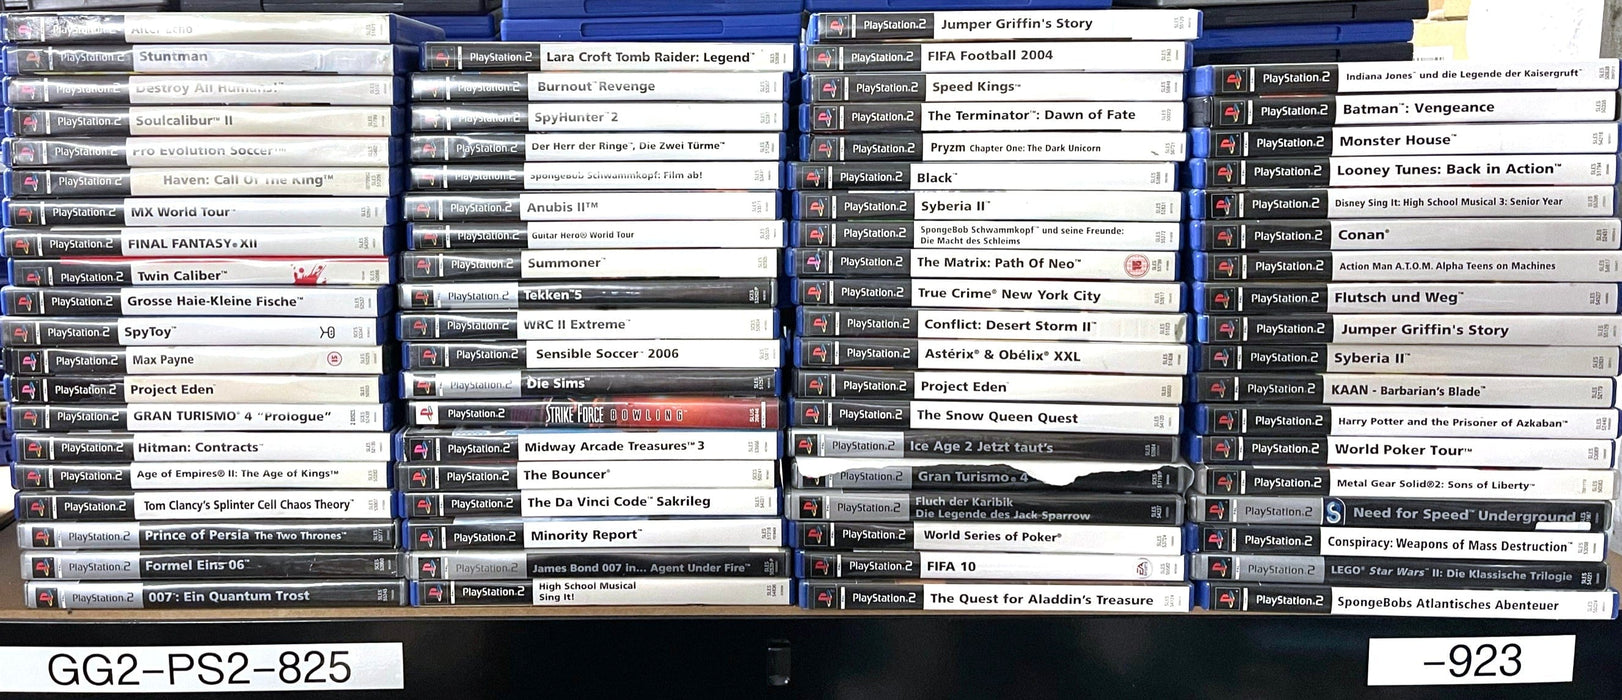 Glaciergames PlayStation 2 Game Half-Life - Deutsche Version PlayStation 2 (Nr.1245)